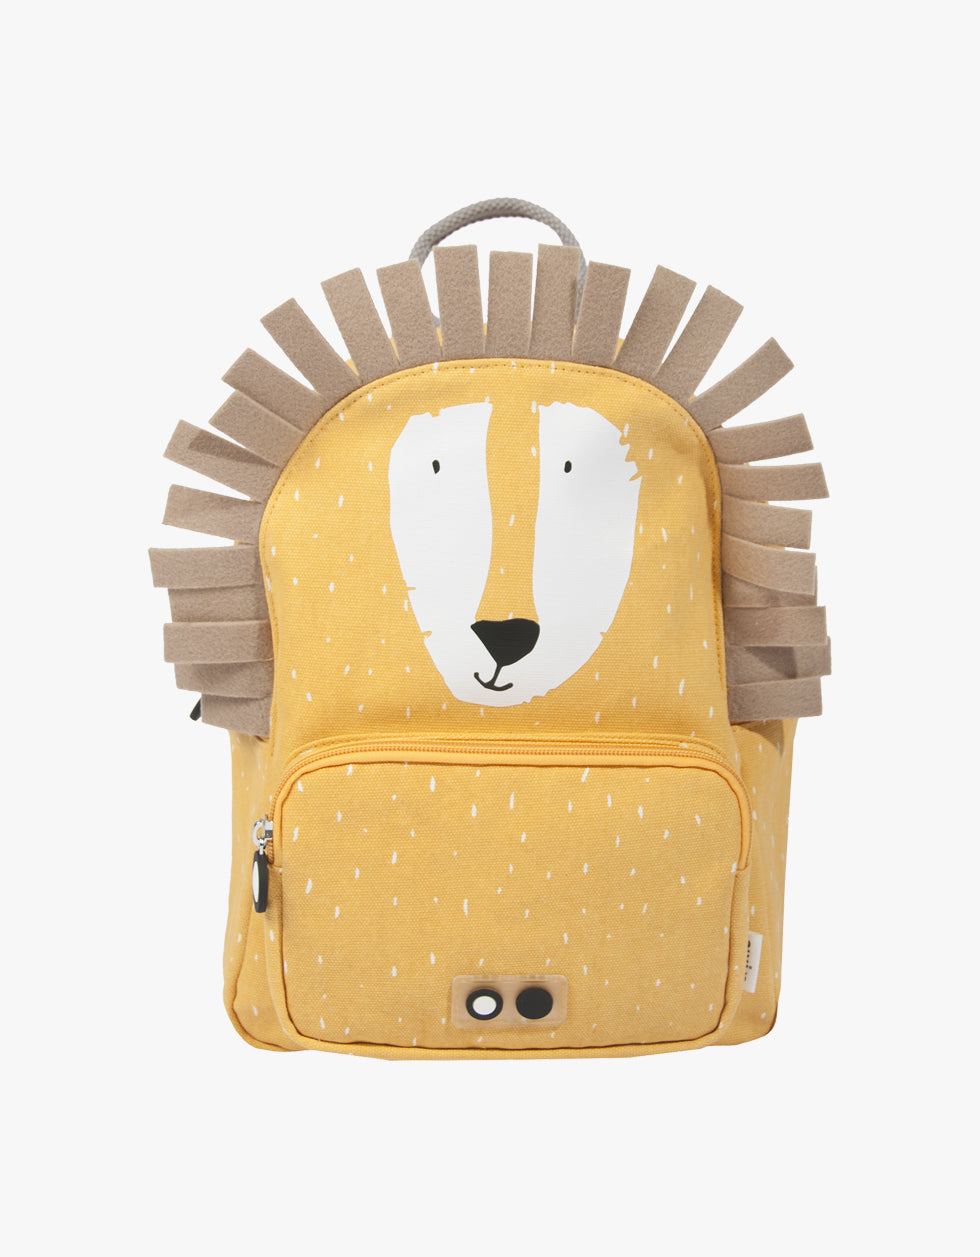 Mr. Lion Backpack